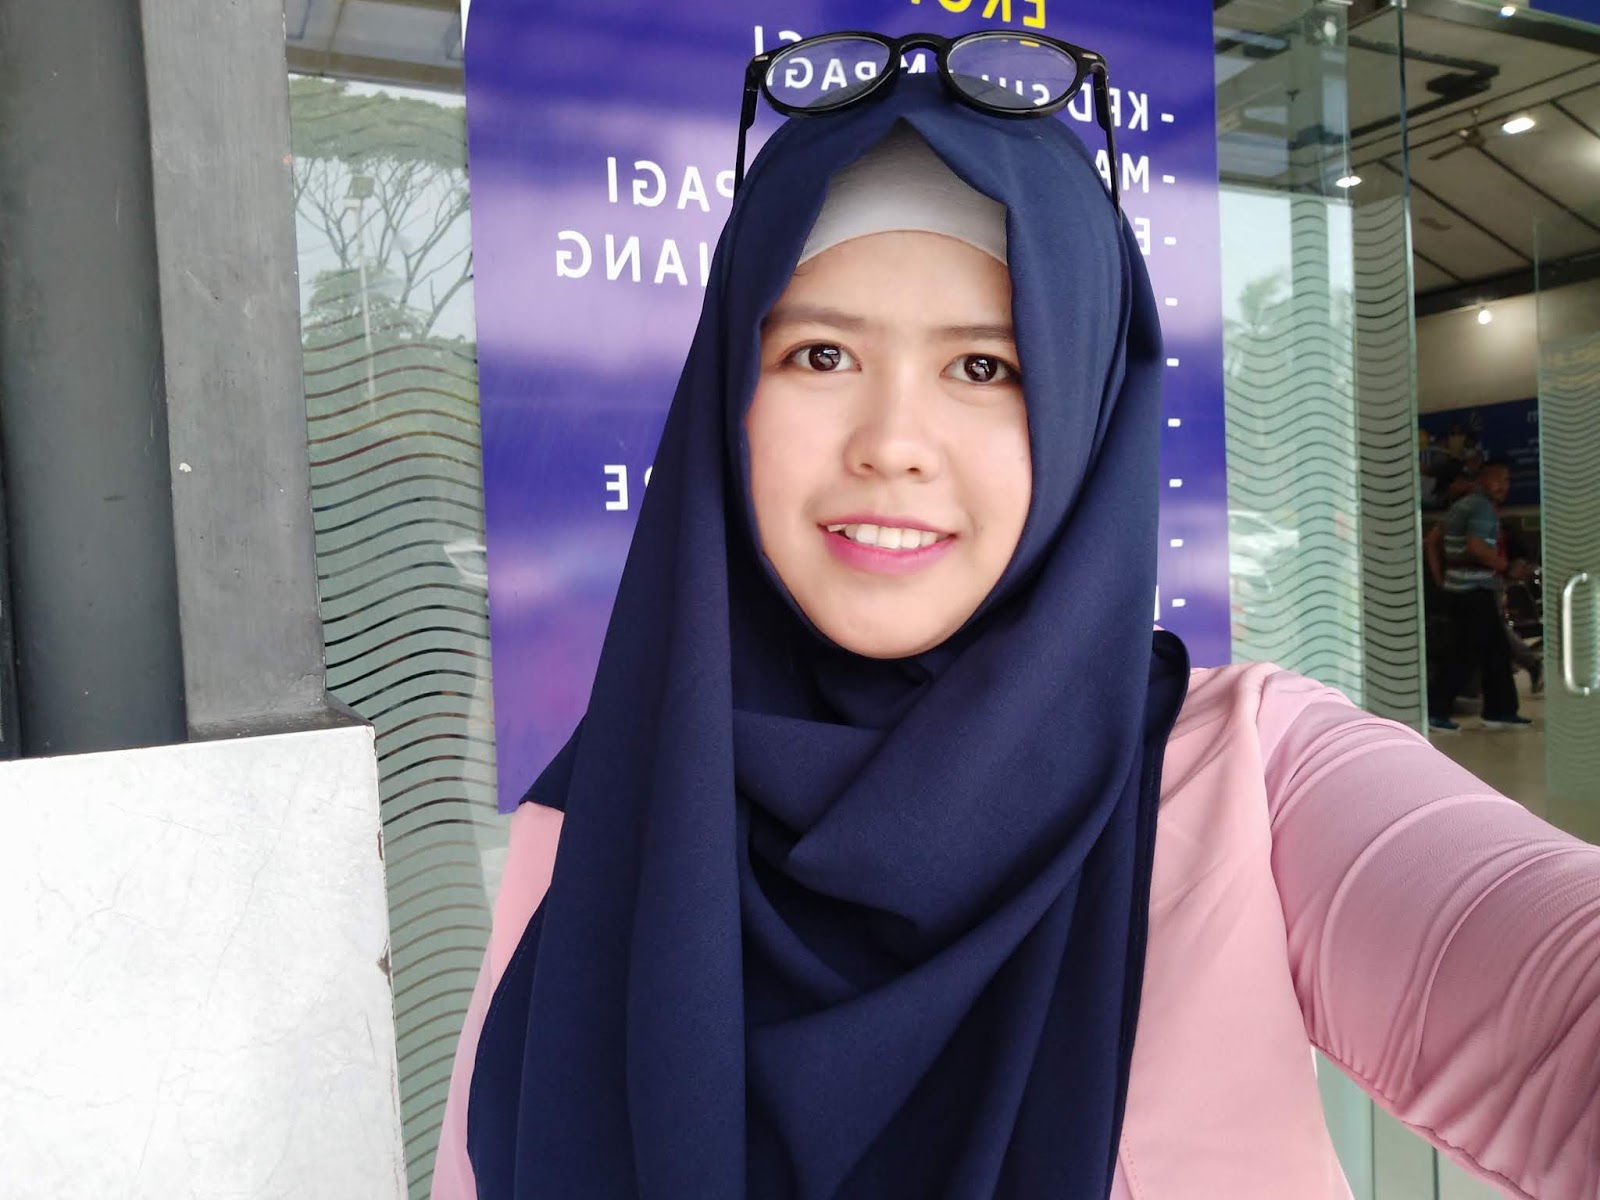 Indo hijab baru pertama rasain ketagihan